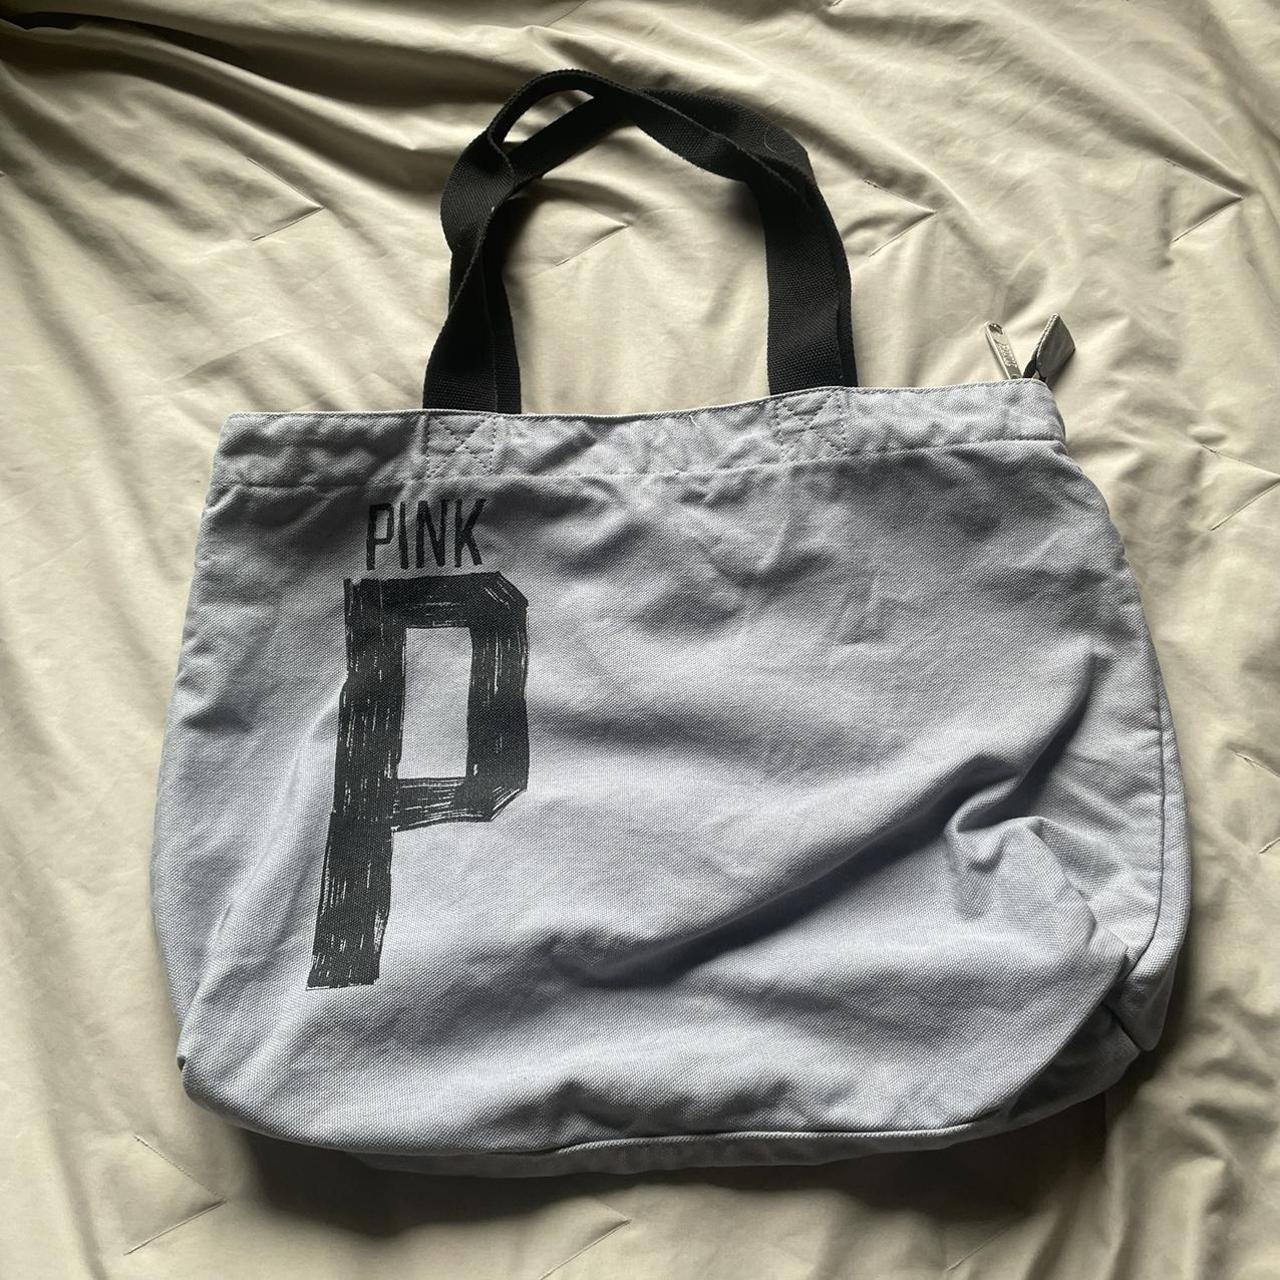 PINK (victoria's secret brand) grey tote bag. never - Depop